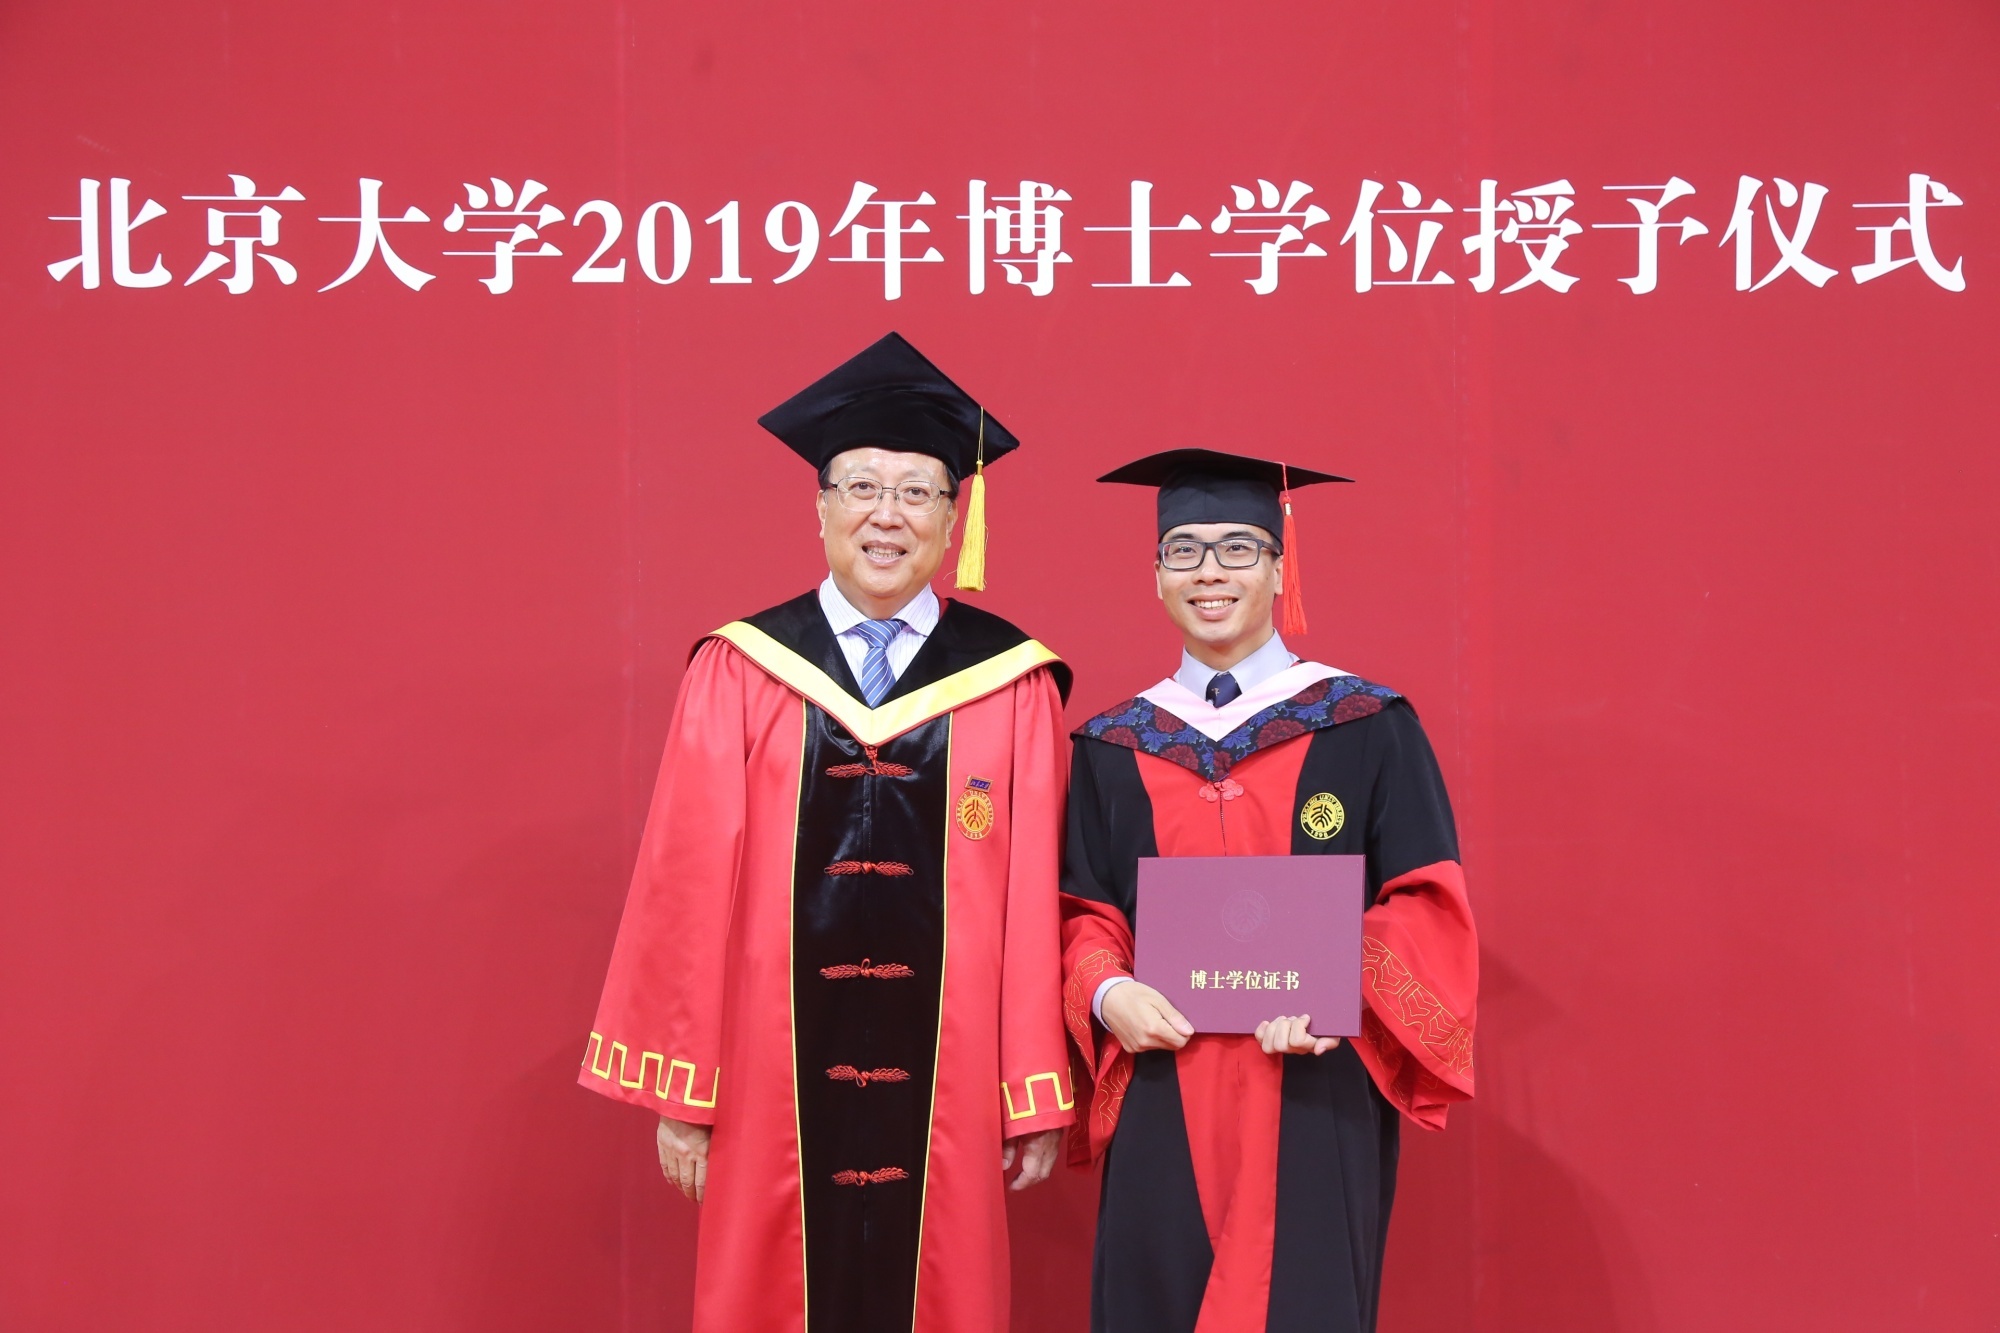 严智德2007年毕业于香港公开大学,随后又在香港浸会大学参加师范学习